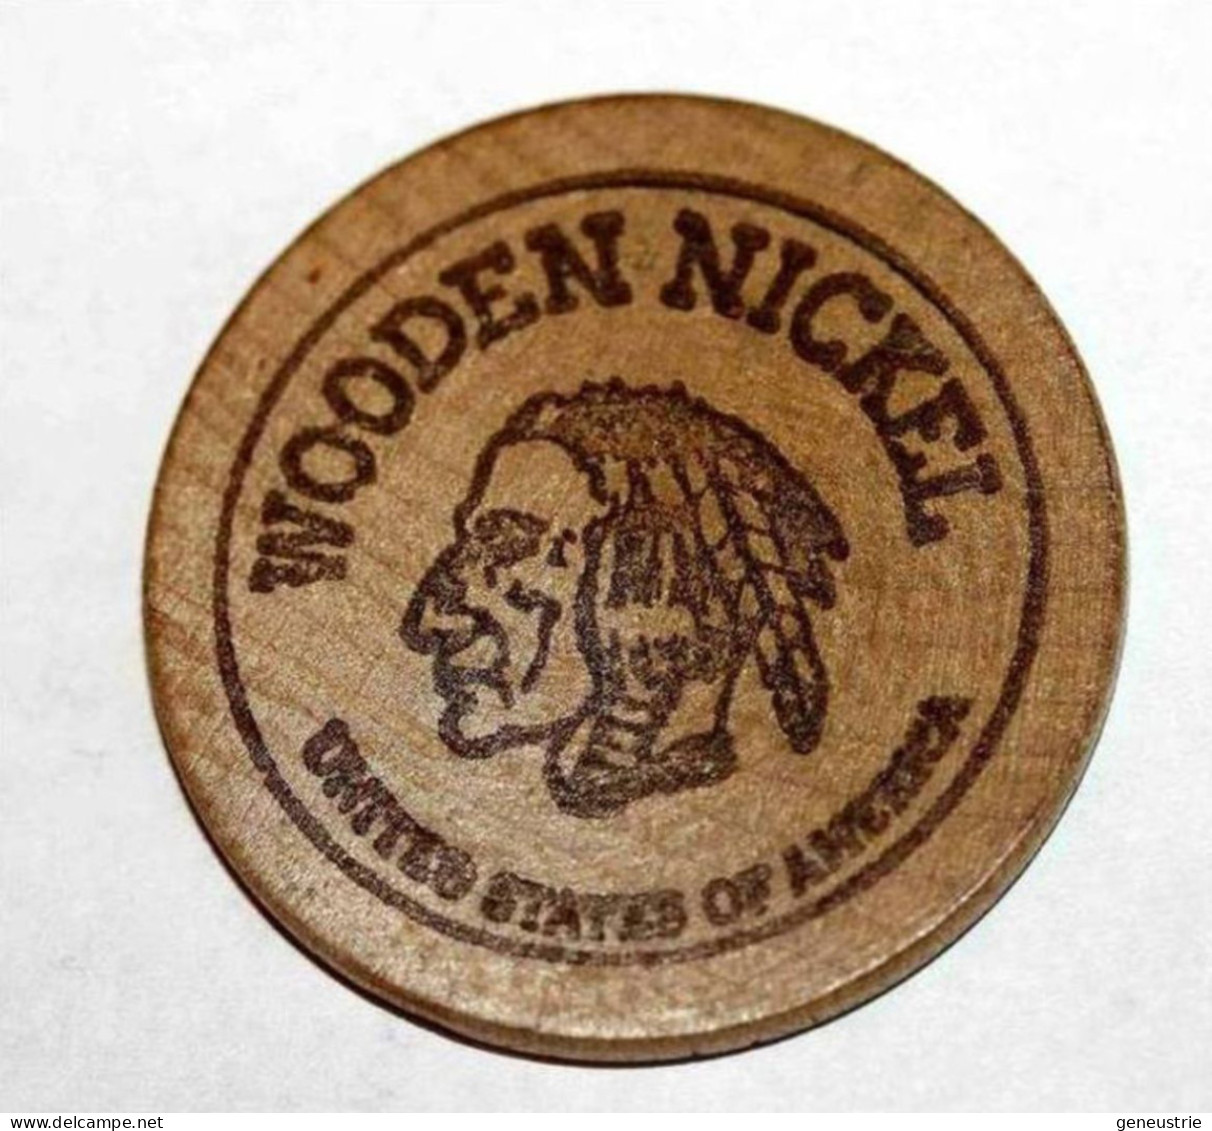 Wooden Token - Wooden Nickel - Jeton Bois Monnaie Nécessité - Tête D'Indien - Neidermyer Poultry 1984 - Etats-Unis - Monétaires/De Nécessité